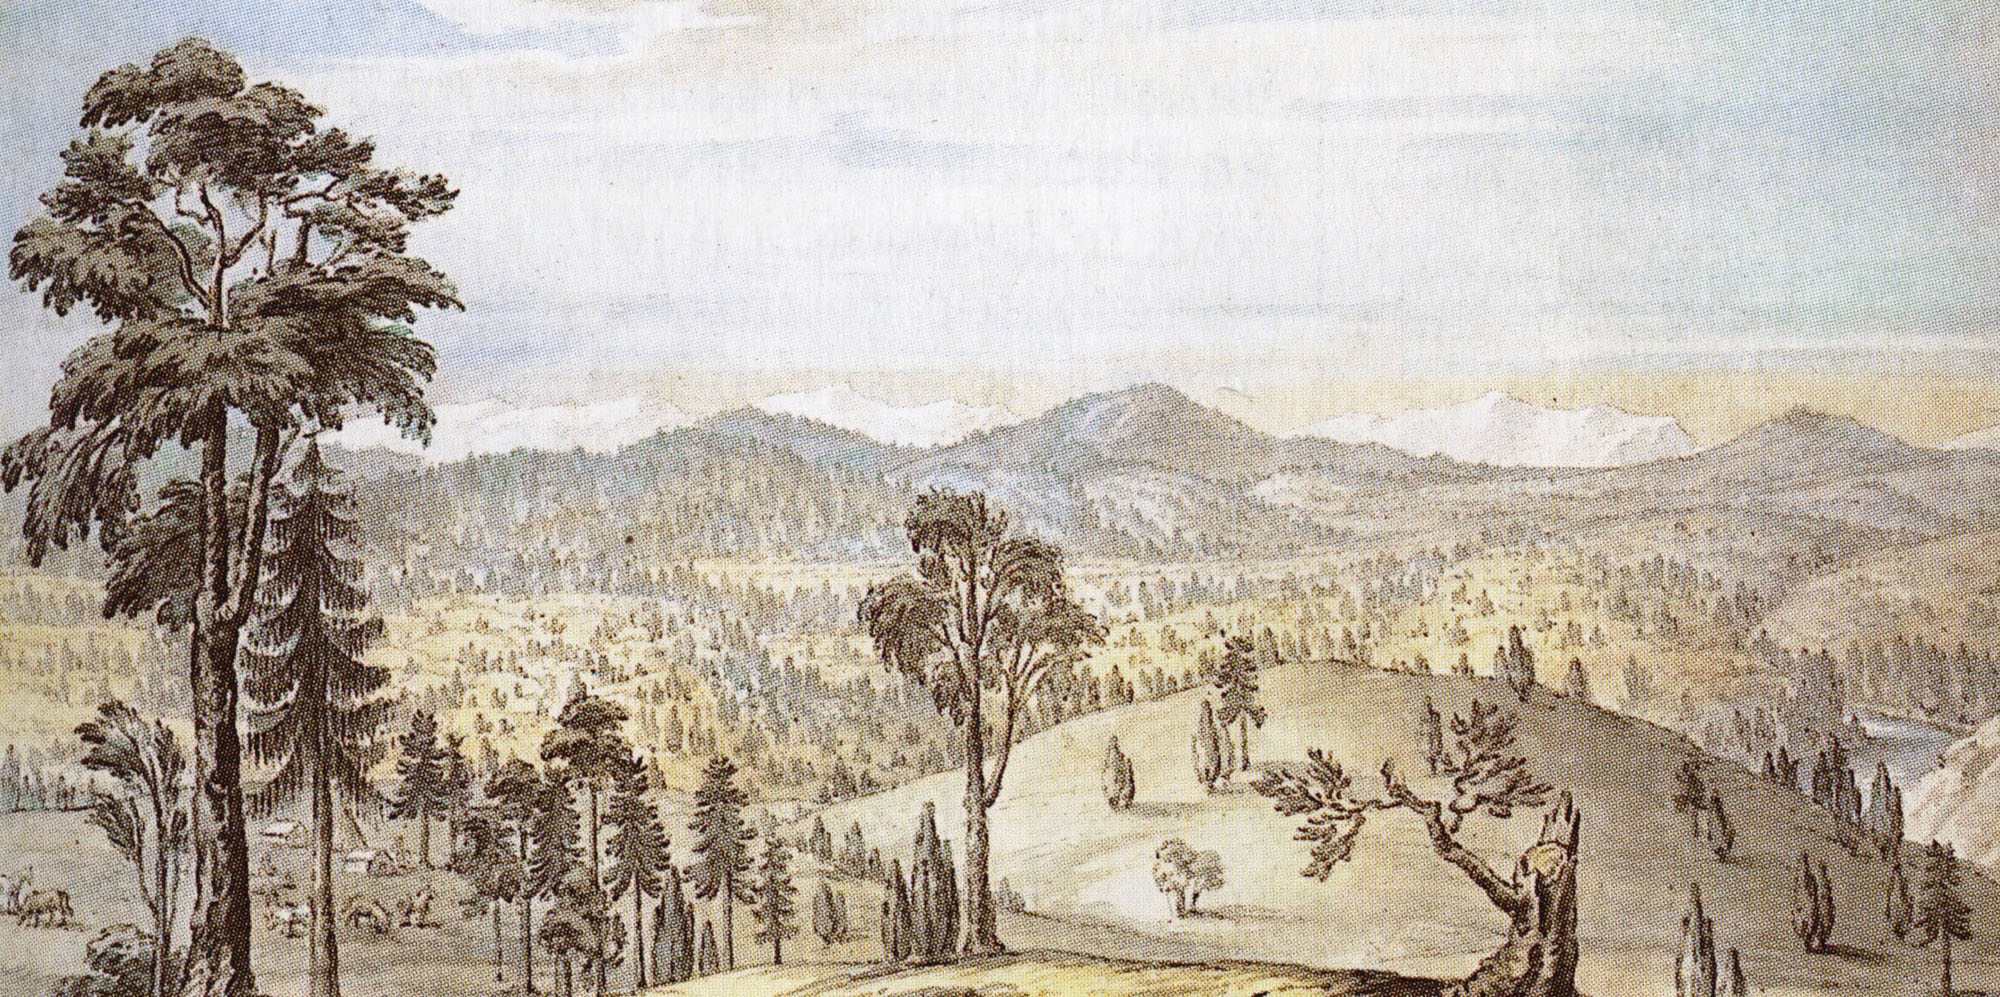 Е. Корнеев. Вид цепи гор Хамаз-Дабан, разделяющих Китай и Россию. 1802.